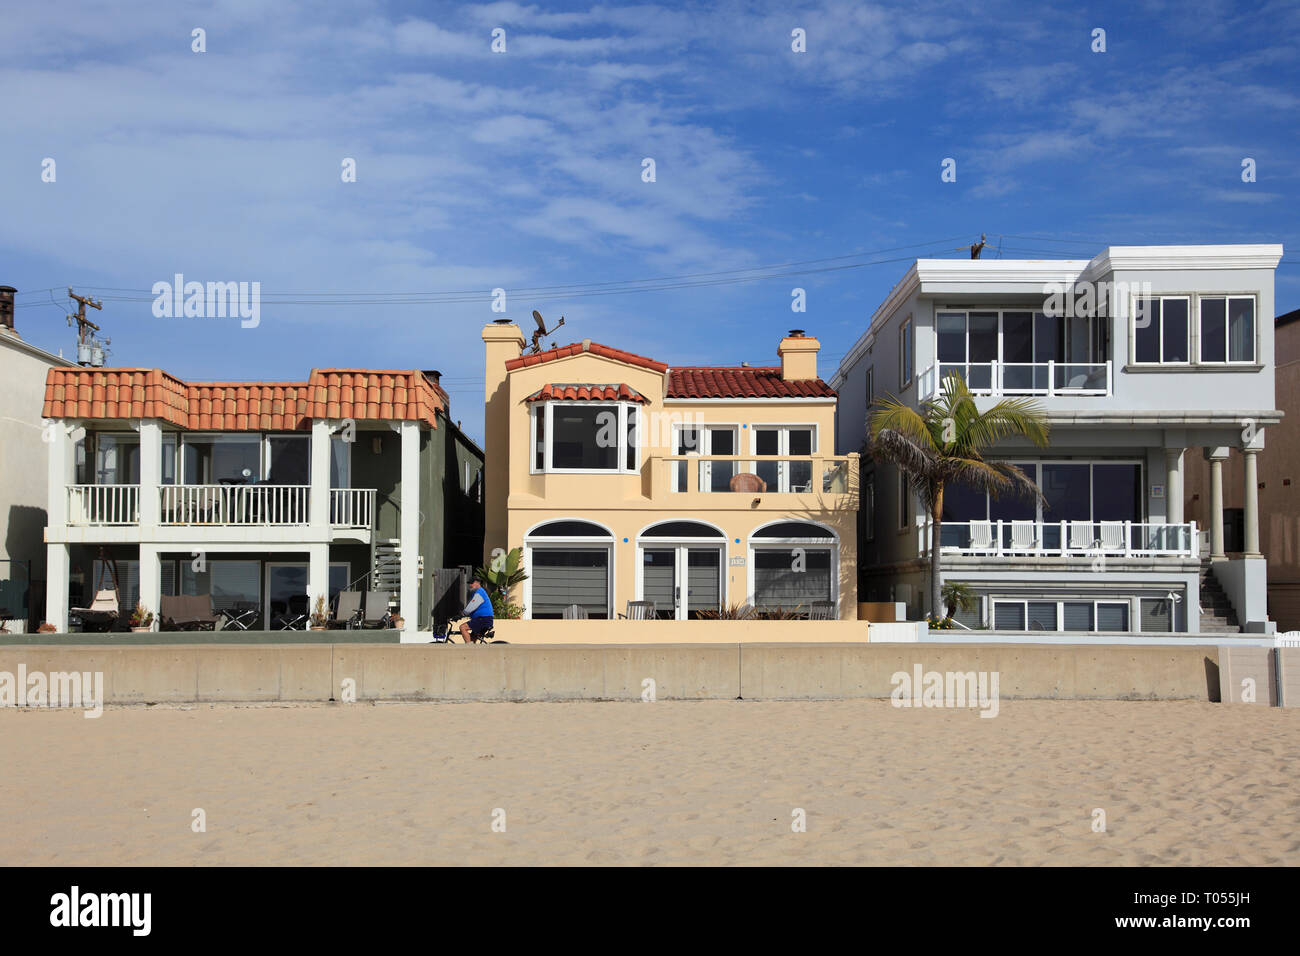 Maisons de Plage, Hermosa Beach, Los Angeles, Californie, USA Banque D'Images